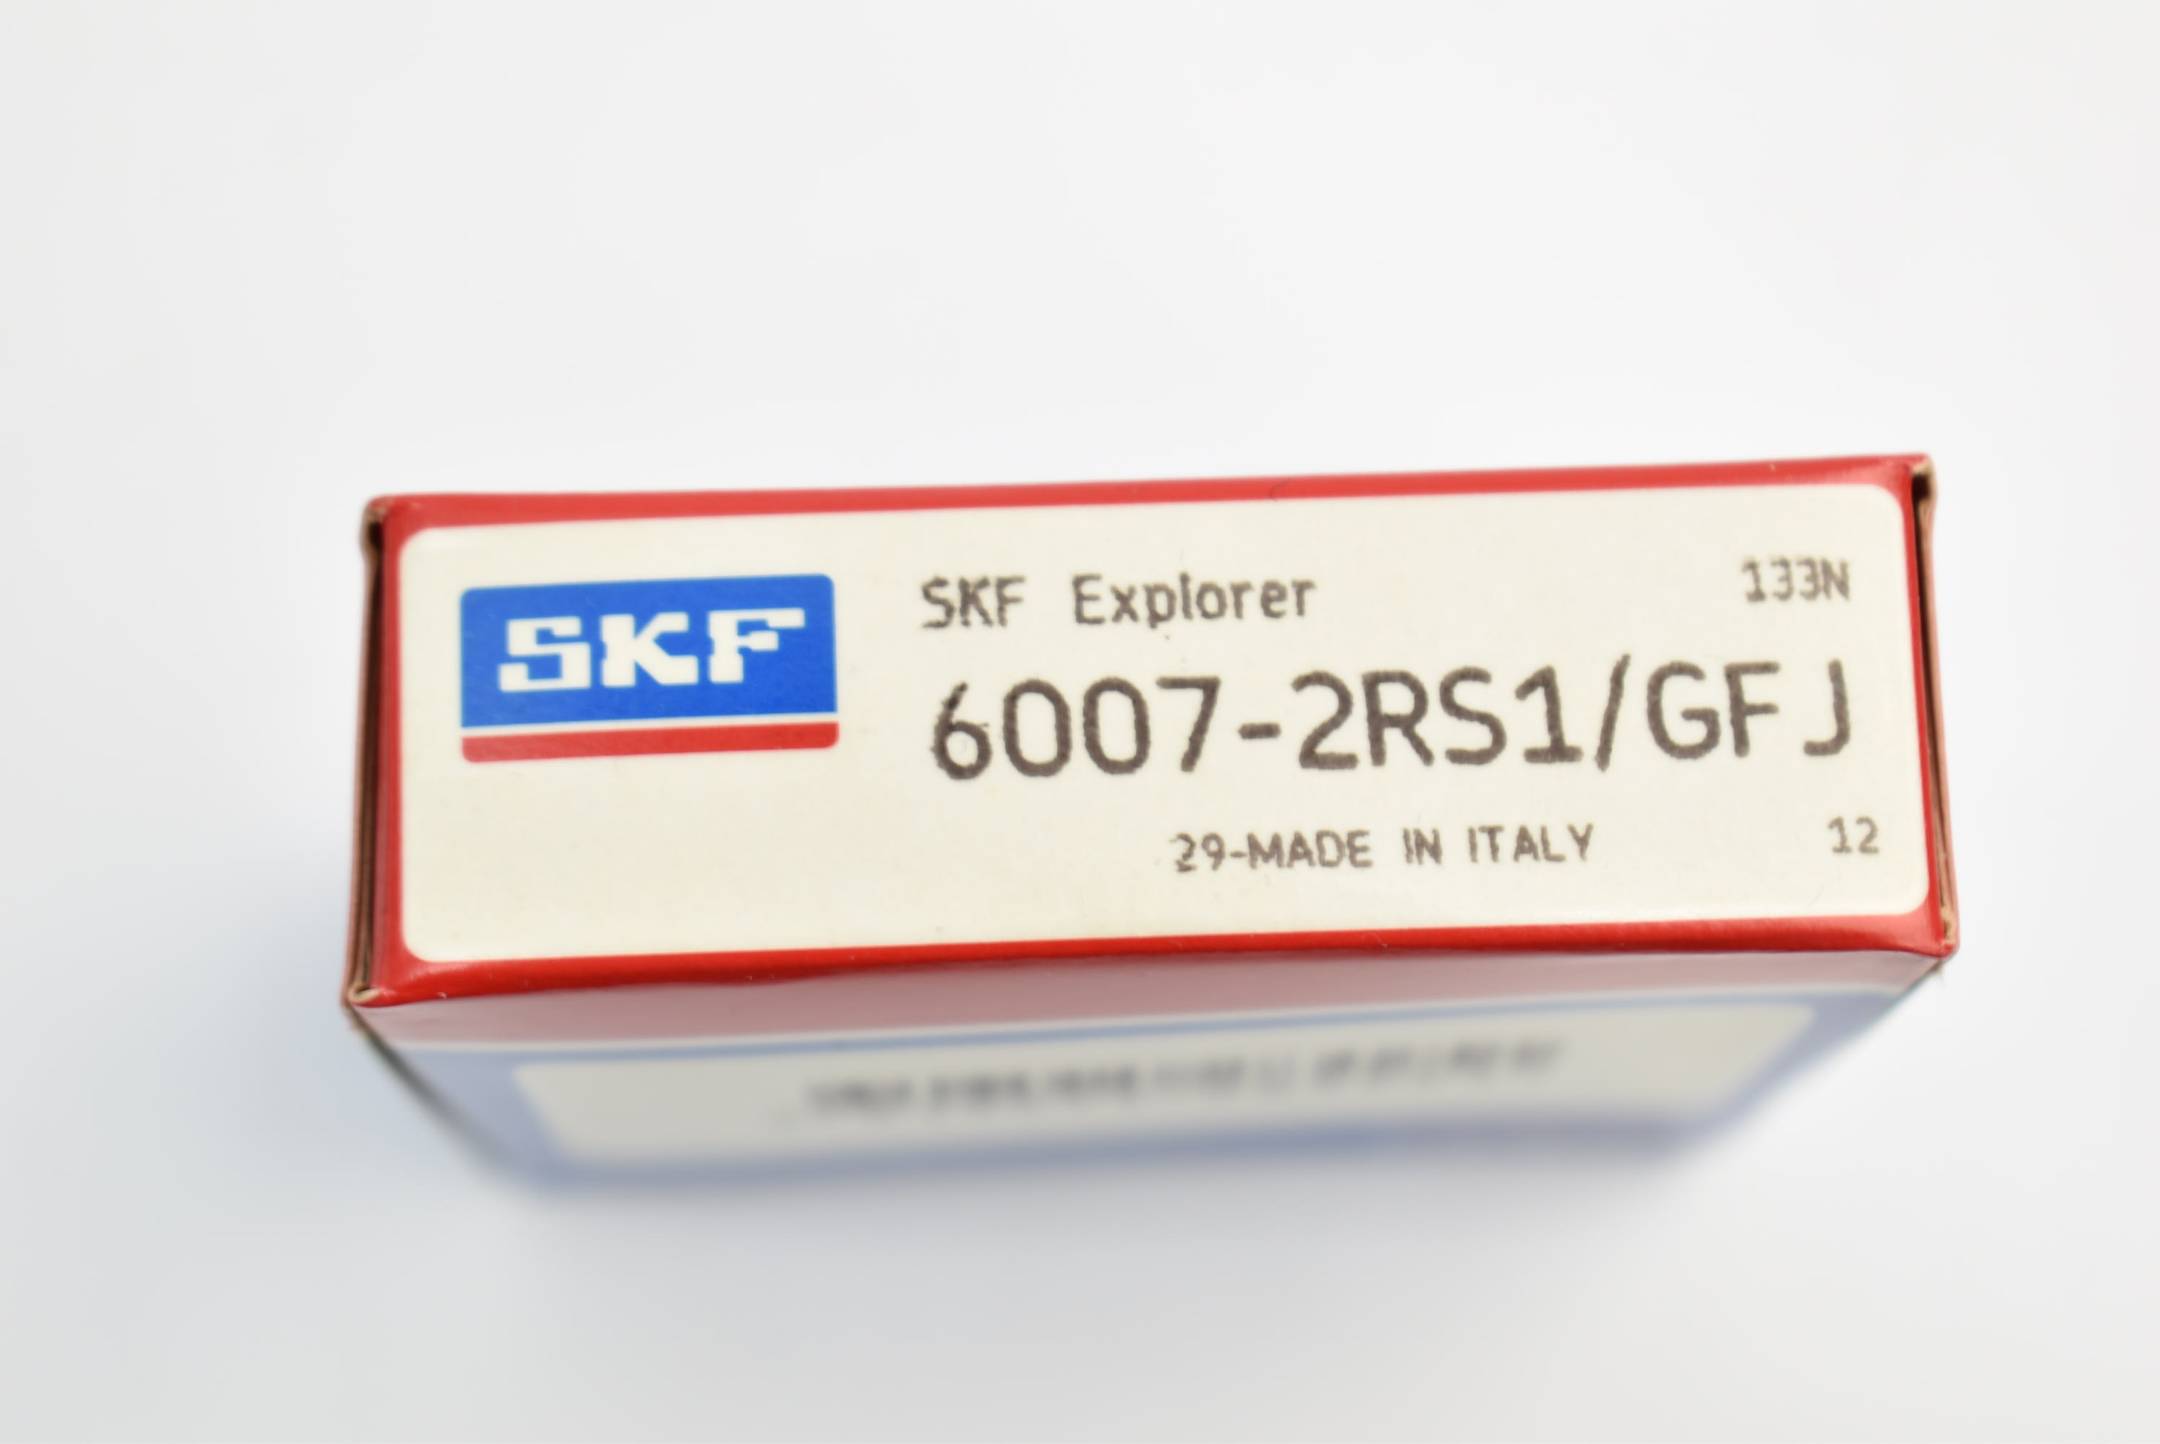 SKF Explorer 6007-2RS1/GFJ